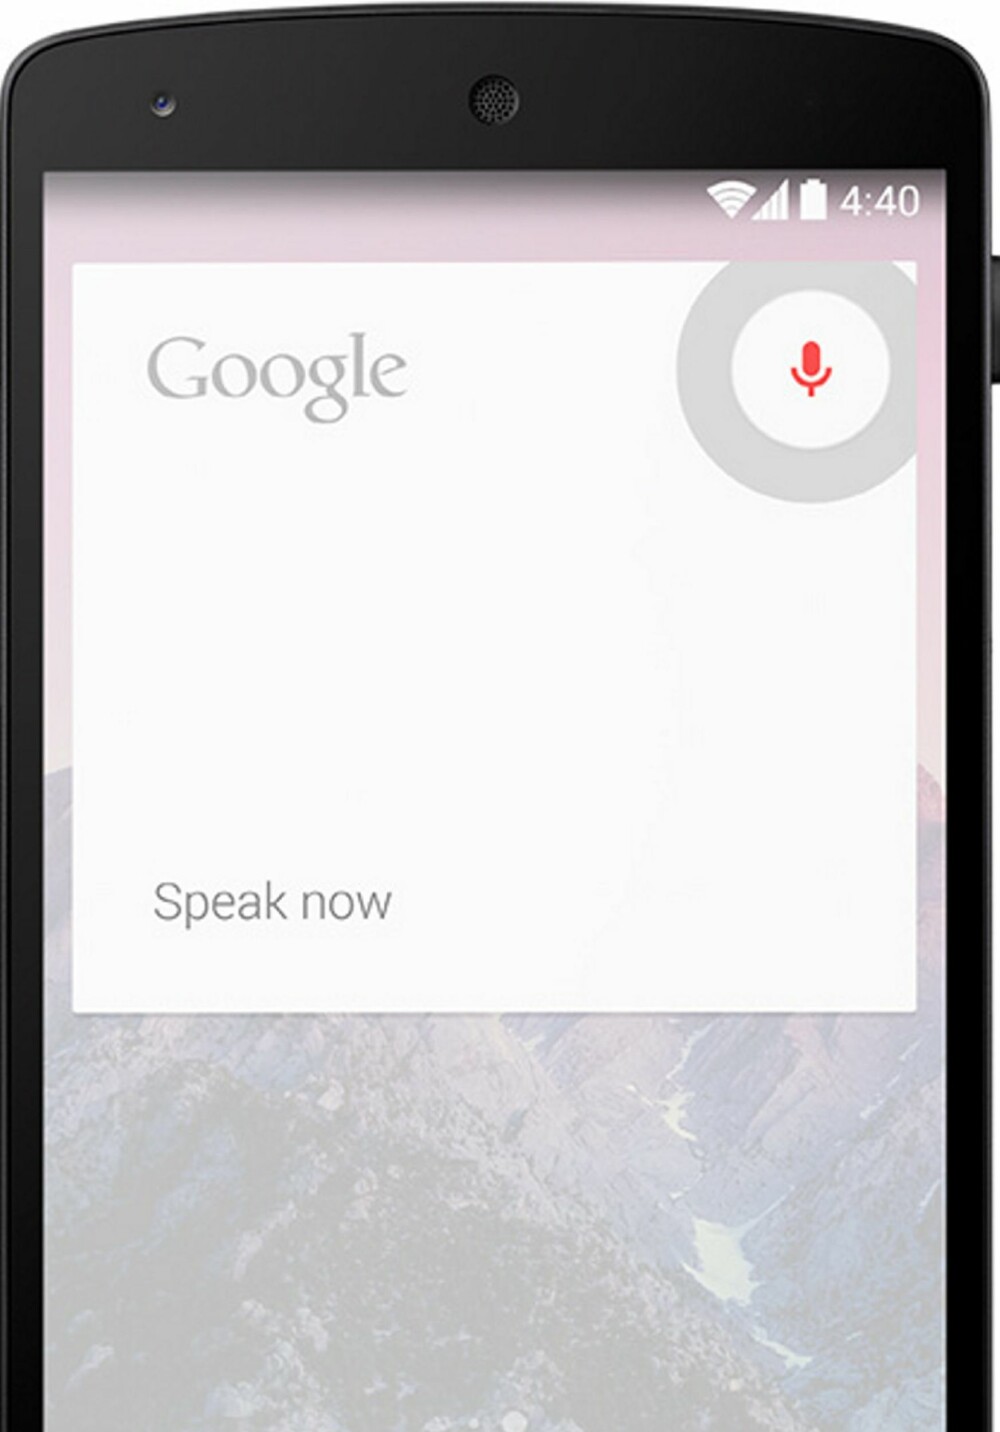 TALESTYRING: Nexus 5 og Android 4.4 har fått talestyring. Du kan be mobilen om å gjøre noe ved å starte kommandoen med "Ok Google".